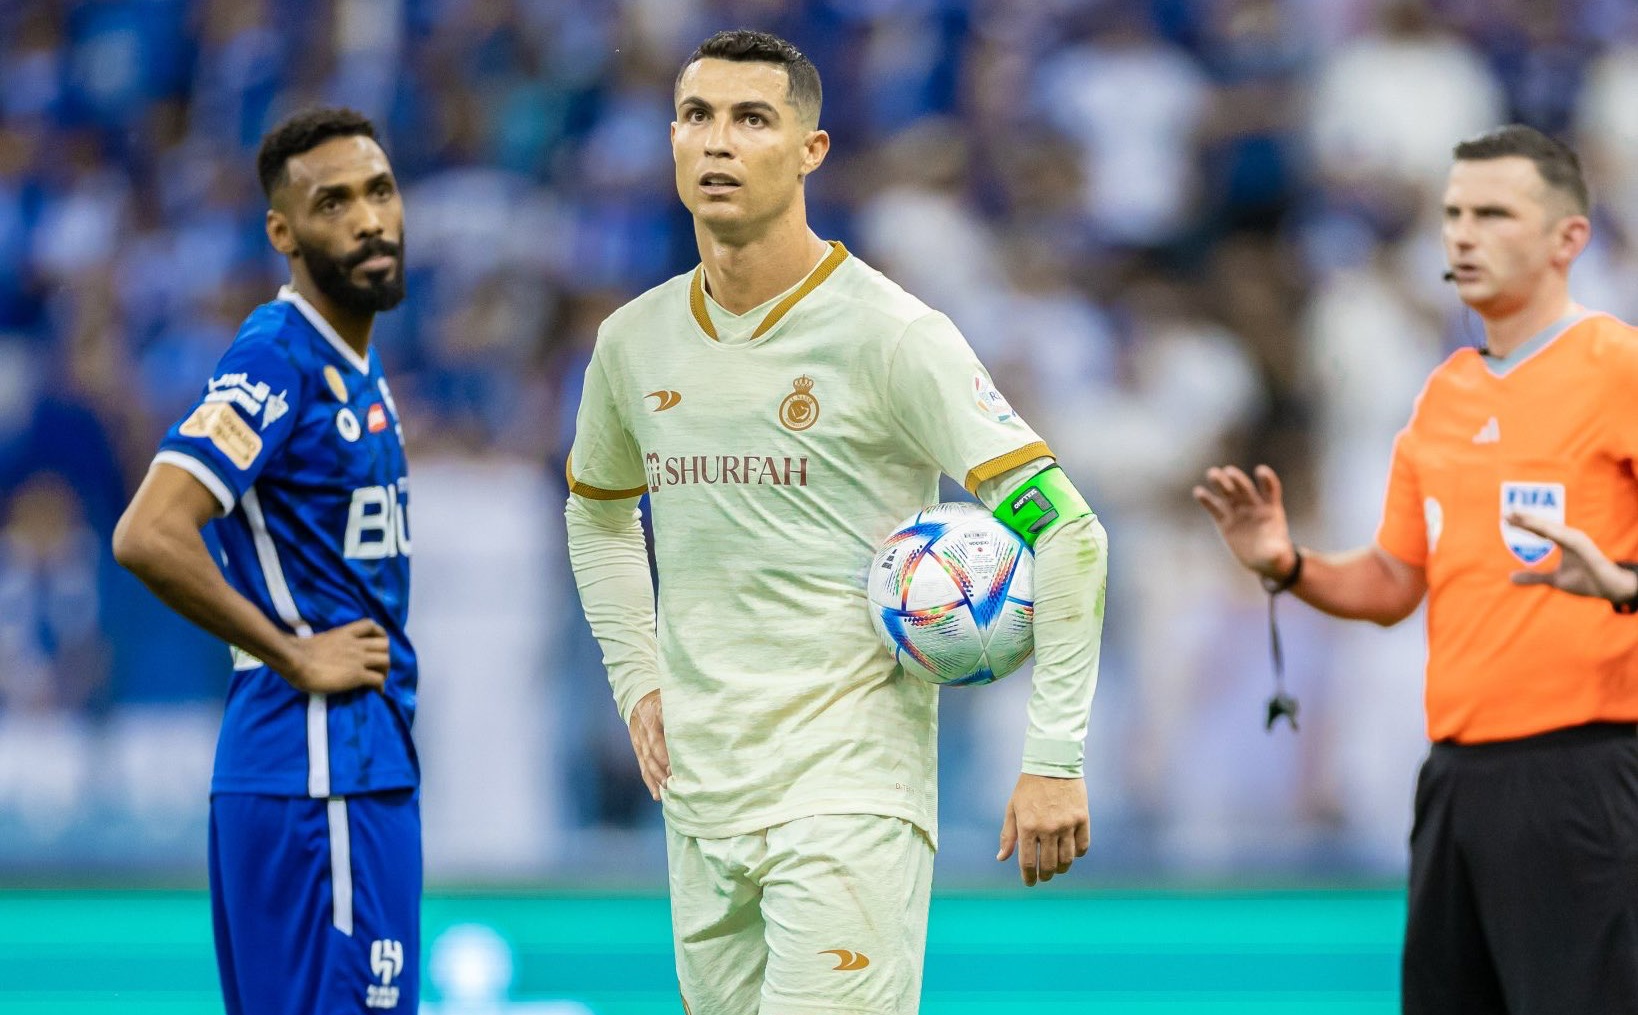 Cựu tiền đạo M.U lập cú đúp, Ronaldo nguy cơ trắng tay 2 mùa liền - Bóng Đá